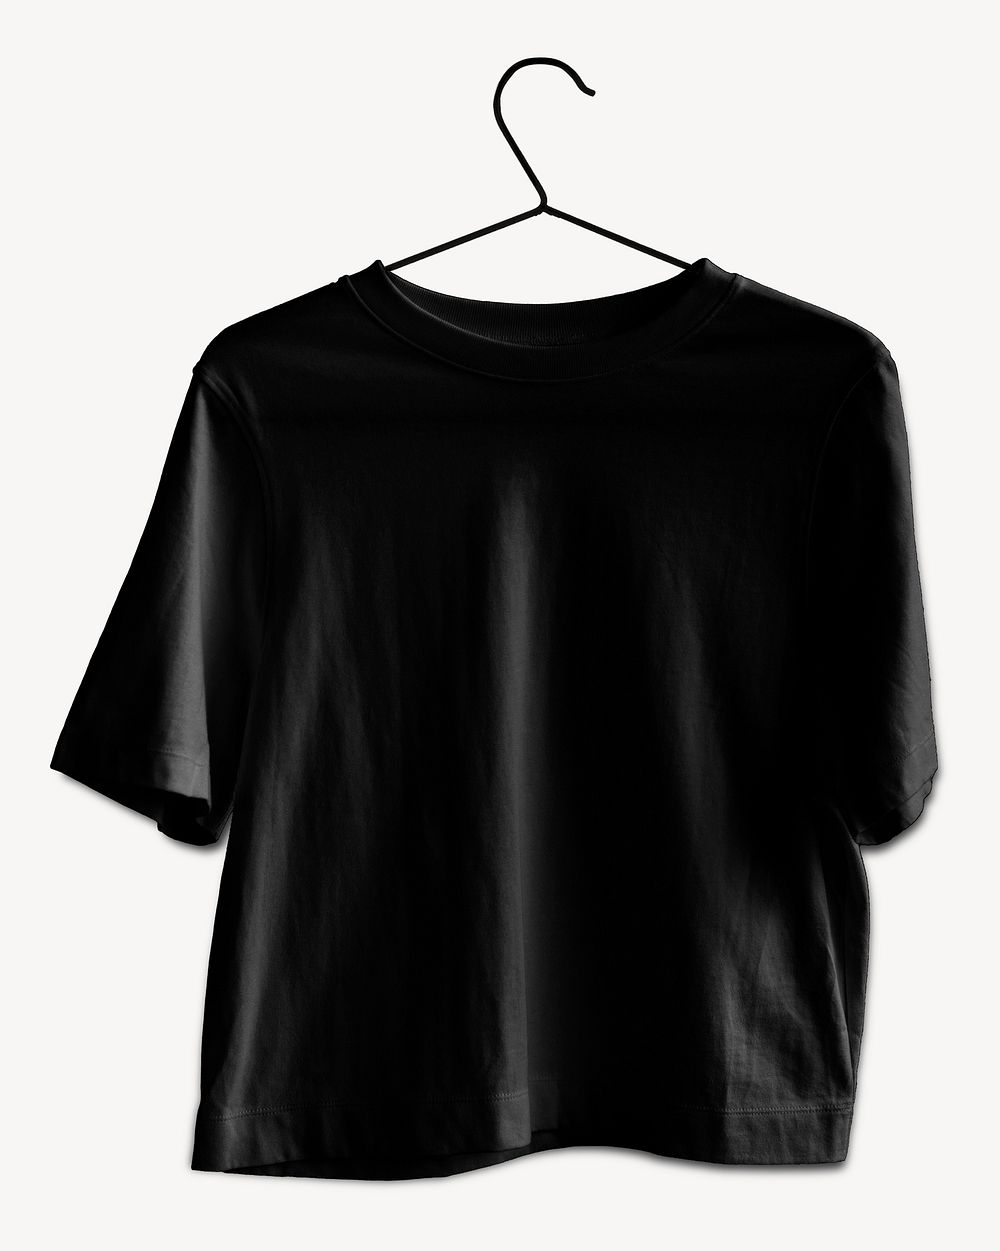 Black t-shirt on hanger isolated design